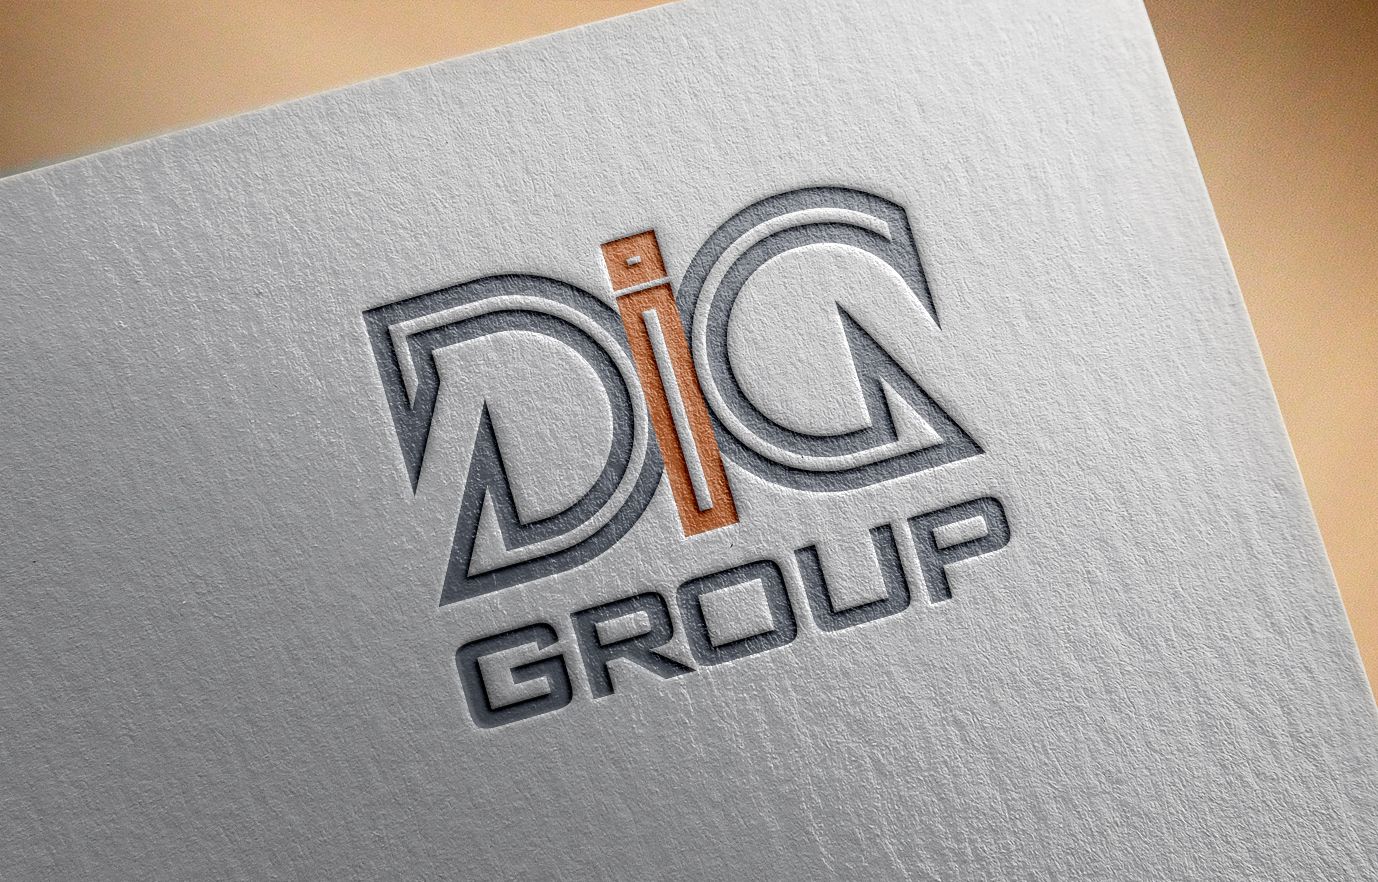 Логотип для финансового брокера ДИГ - дизайнер art-valeri